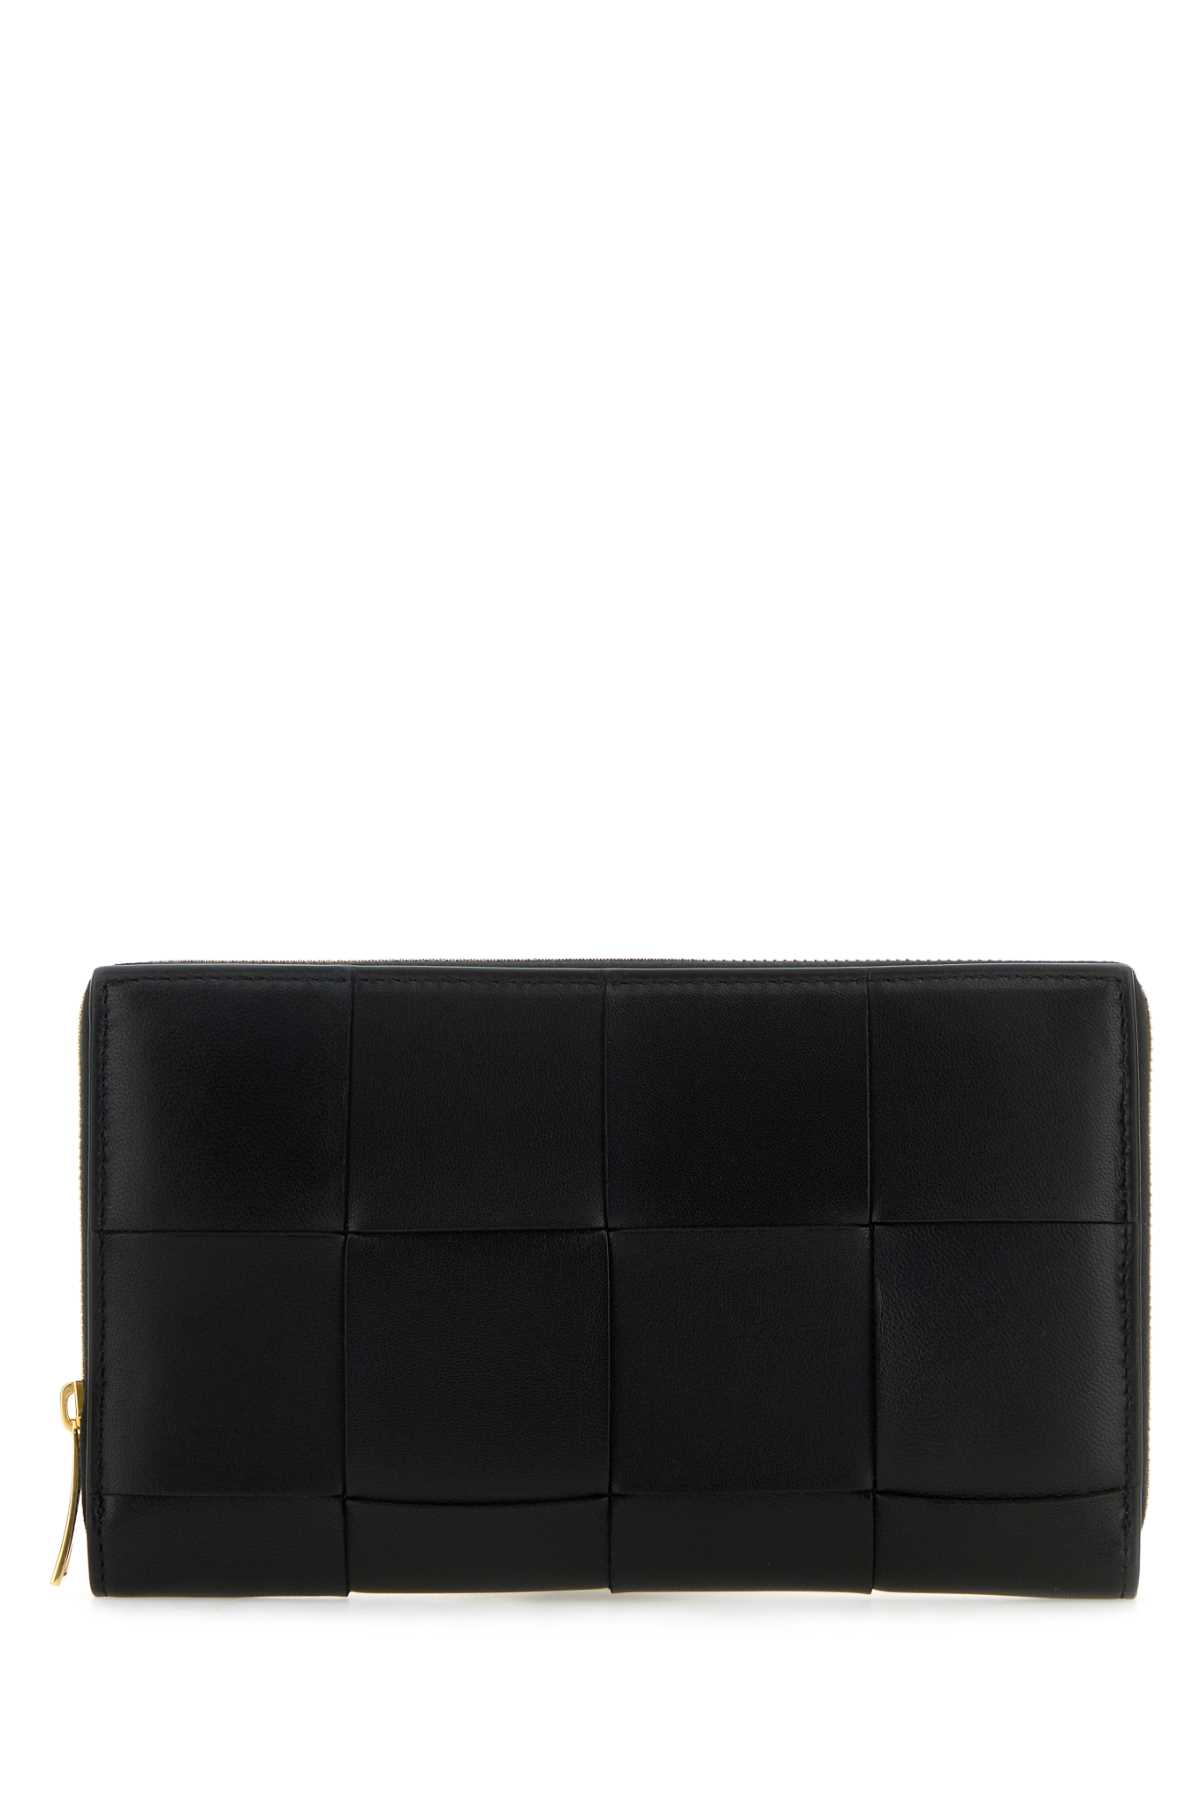 Bottega Veneta Black Leather Wallet In Blackgold